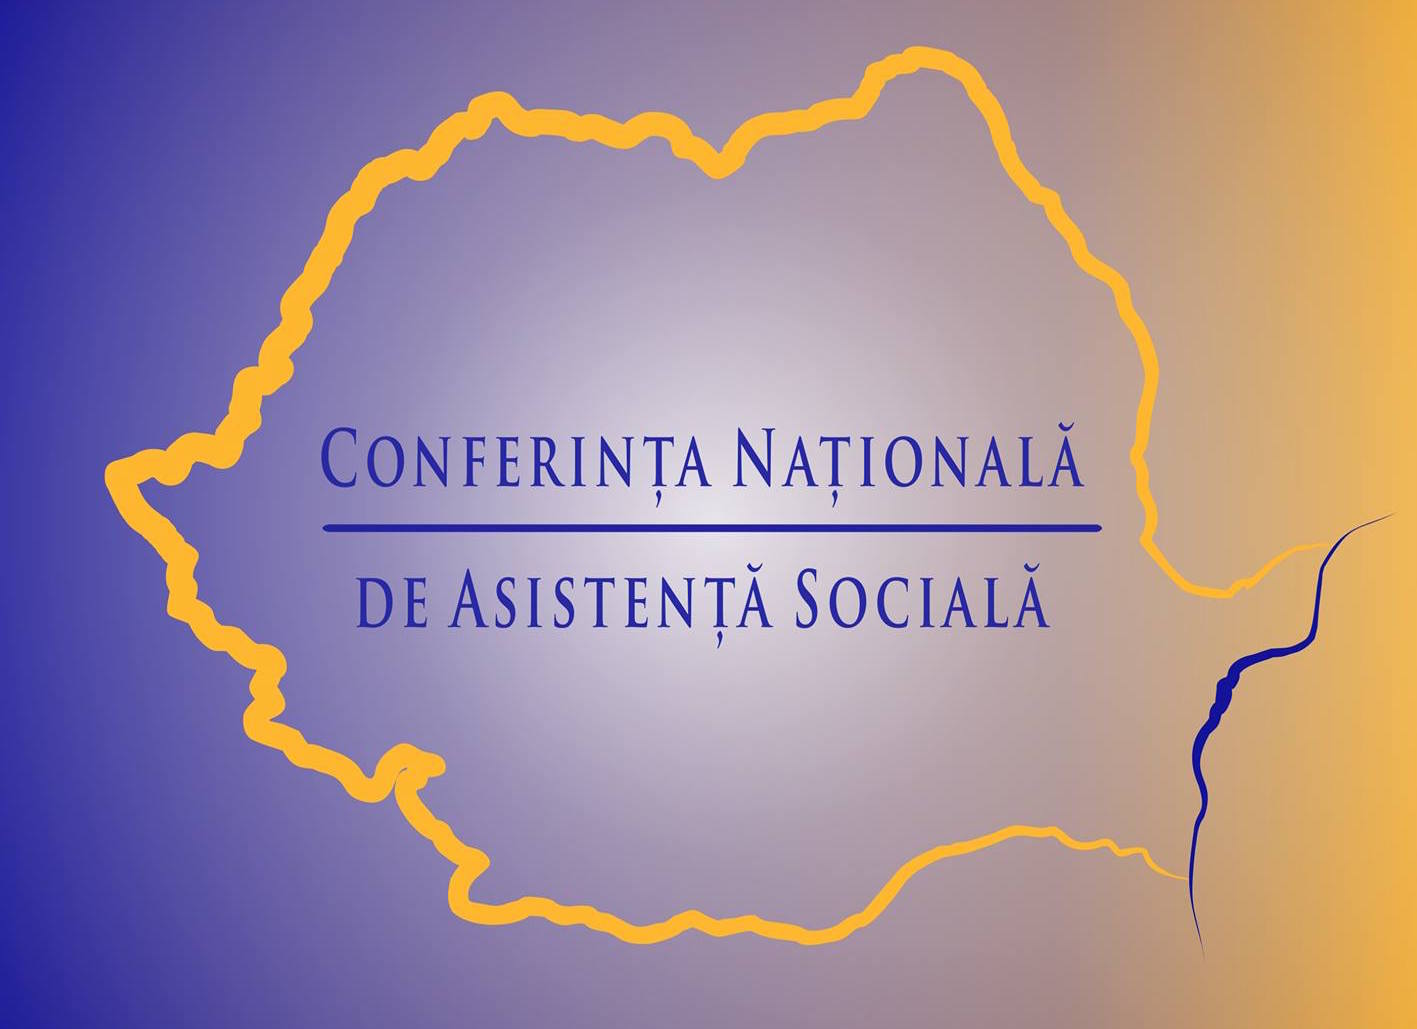 Înscrierile sunt în derulare –  Conferința Națională de Asistență Socială, Predeal 22-24 iunie 2018